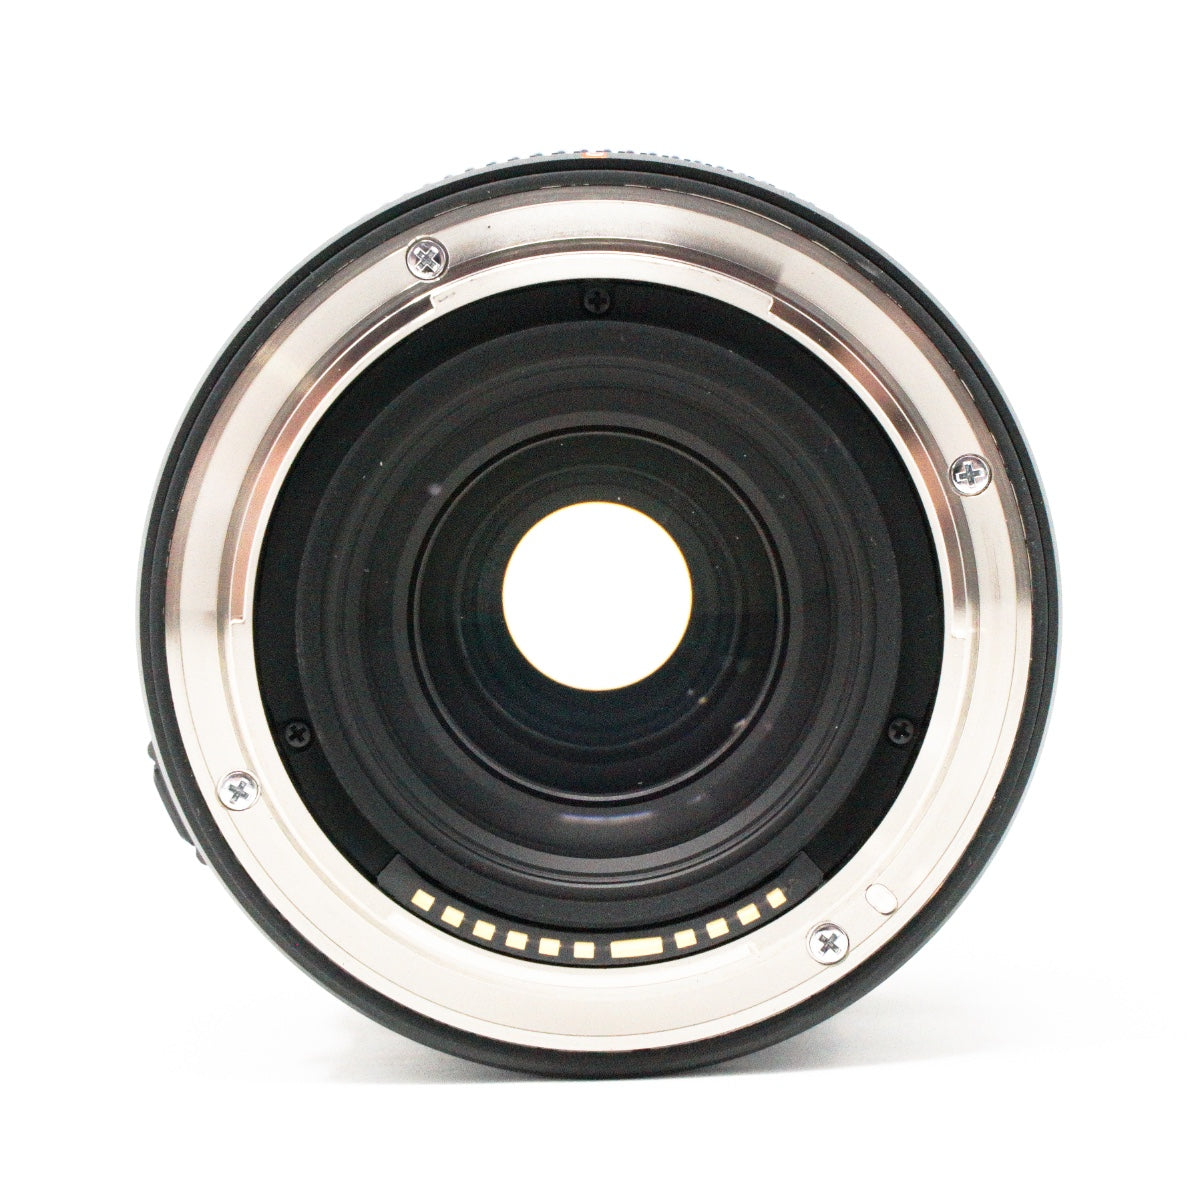 USED Fujifilm GF 23mm f4 R LM WR Lens